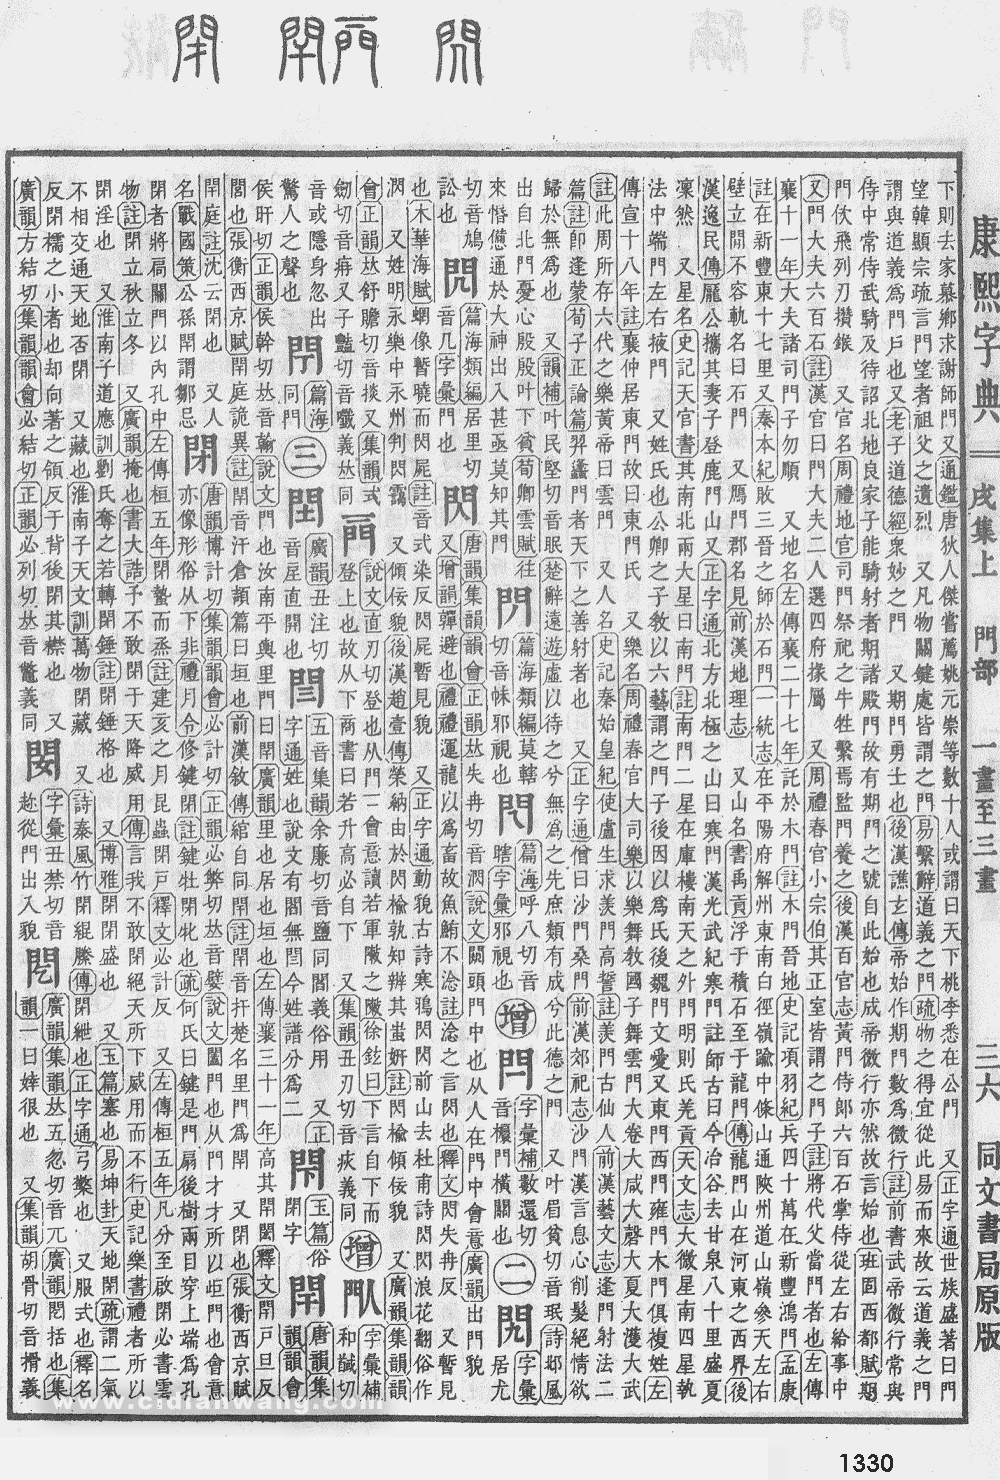 康熙字典掃描版第1330頁